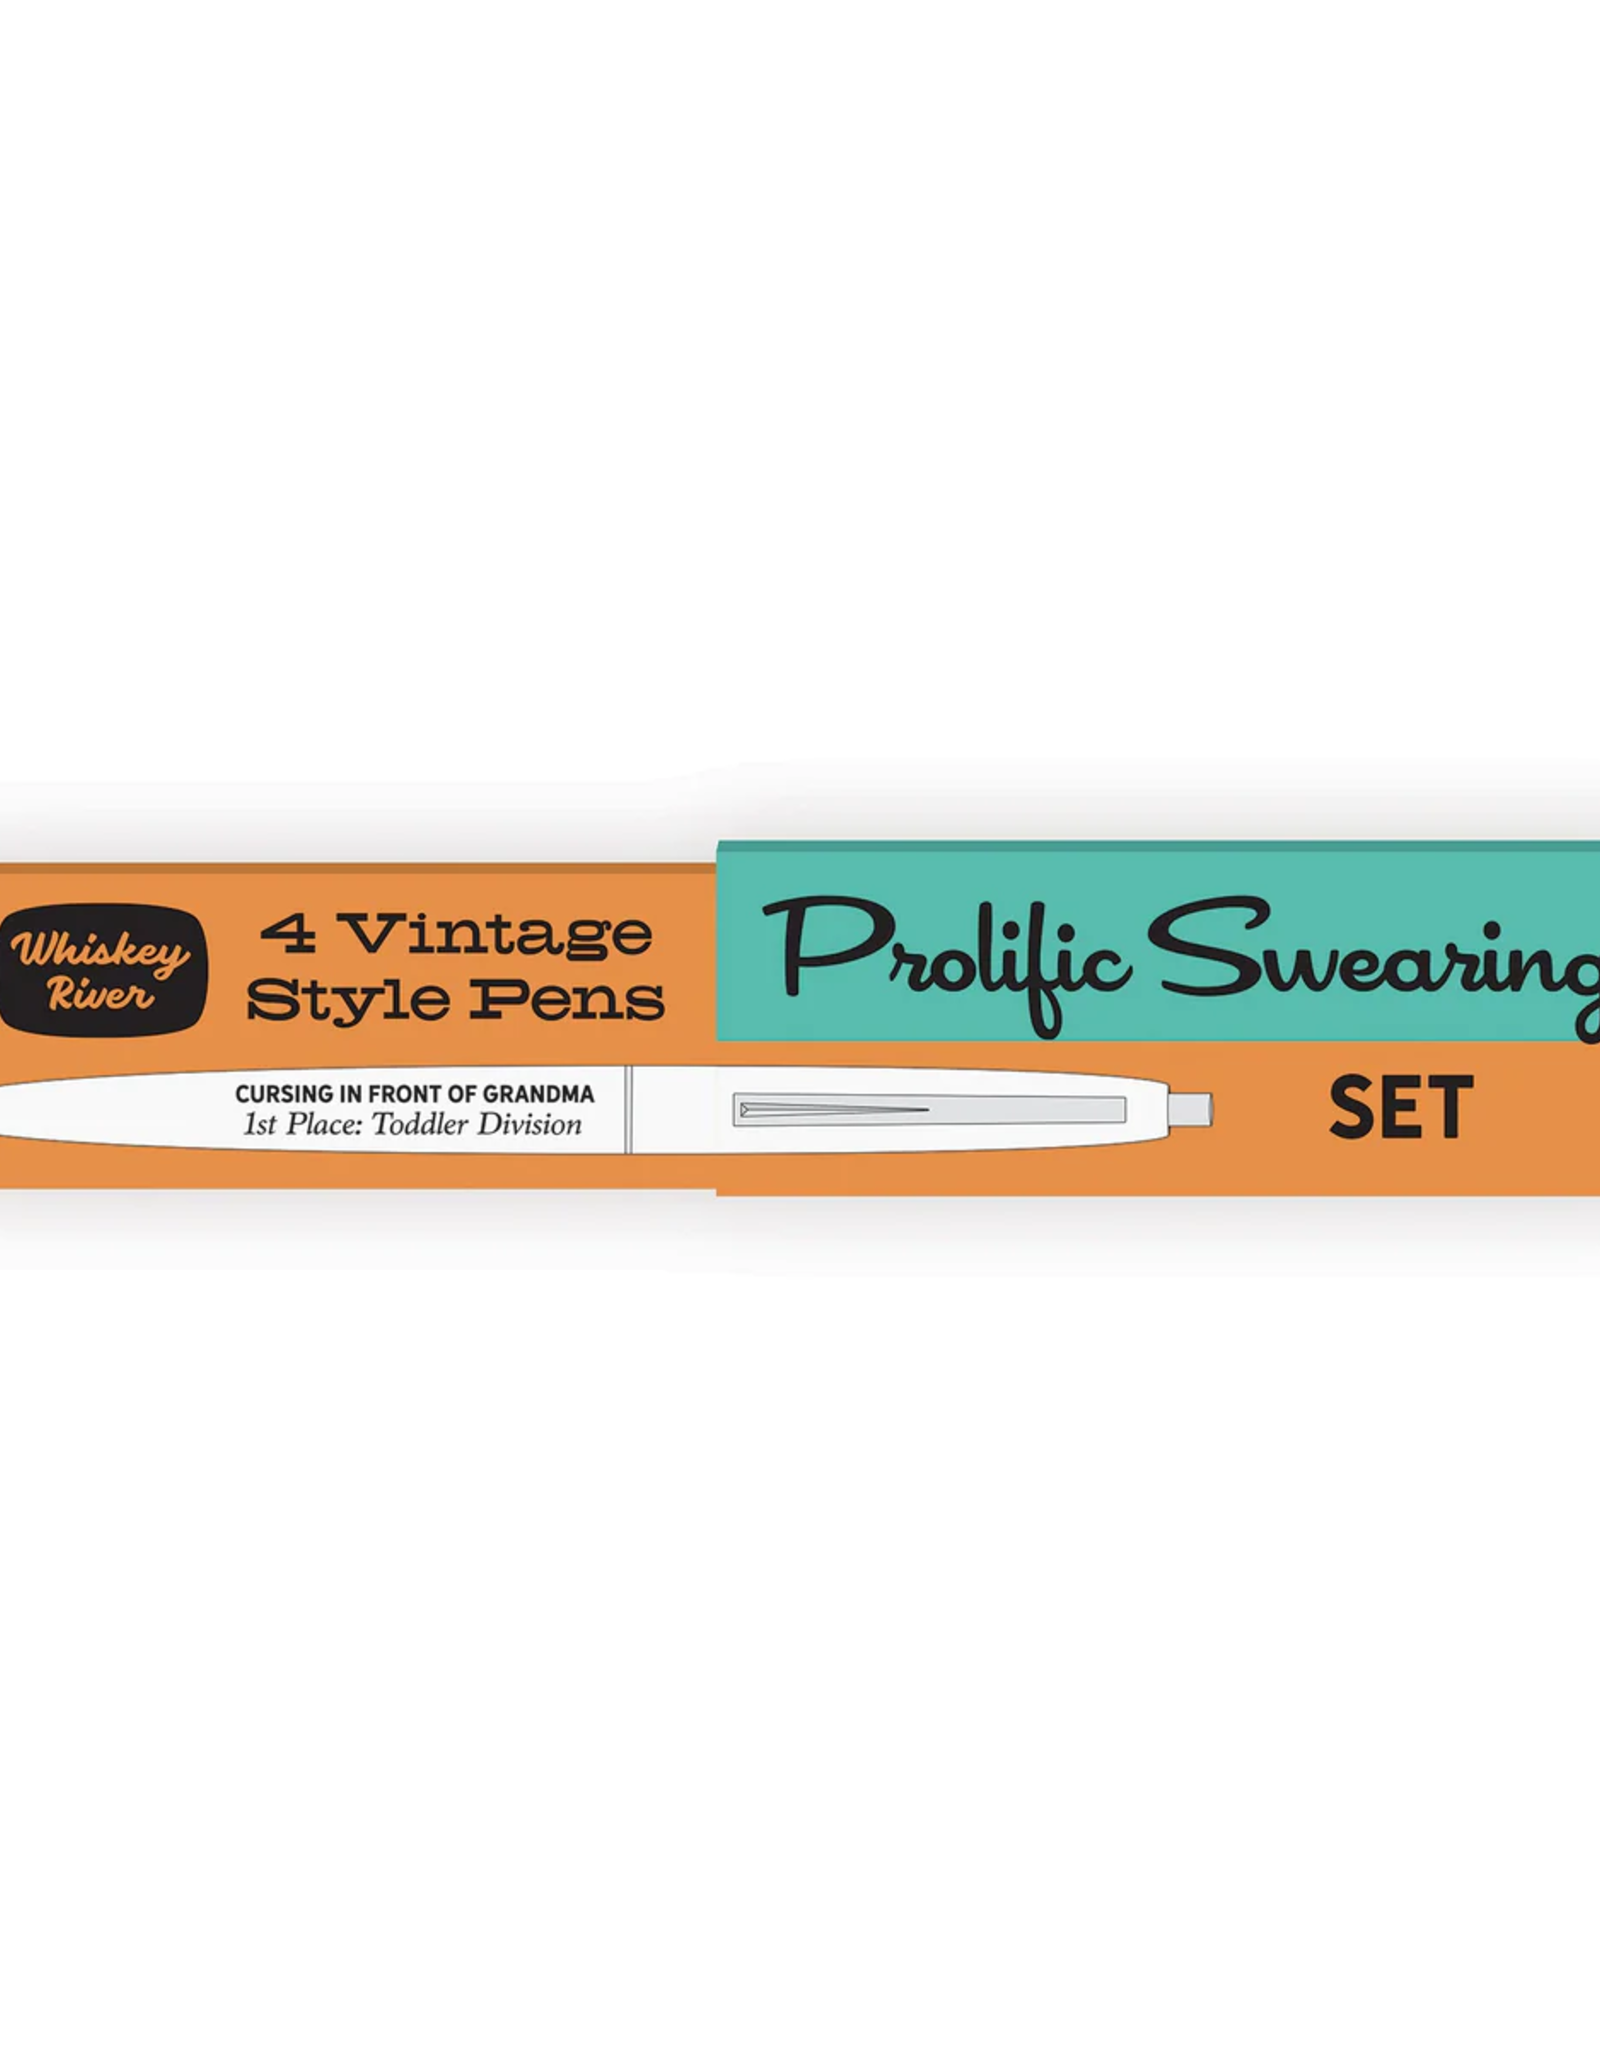 Prolific Swearing Awards Pen Set